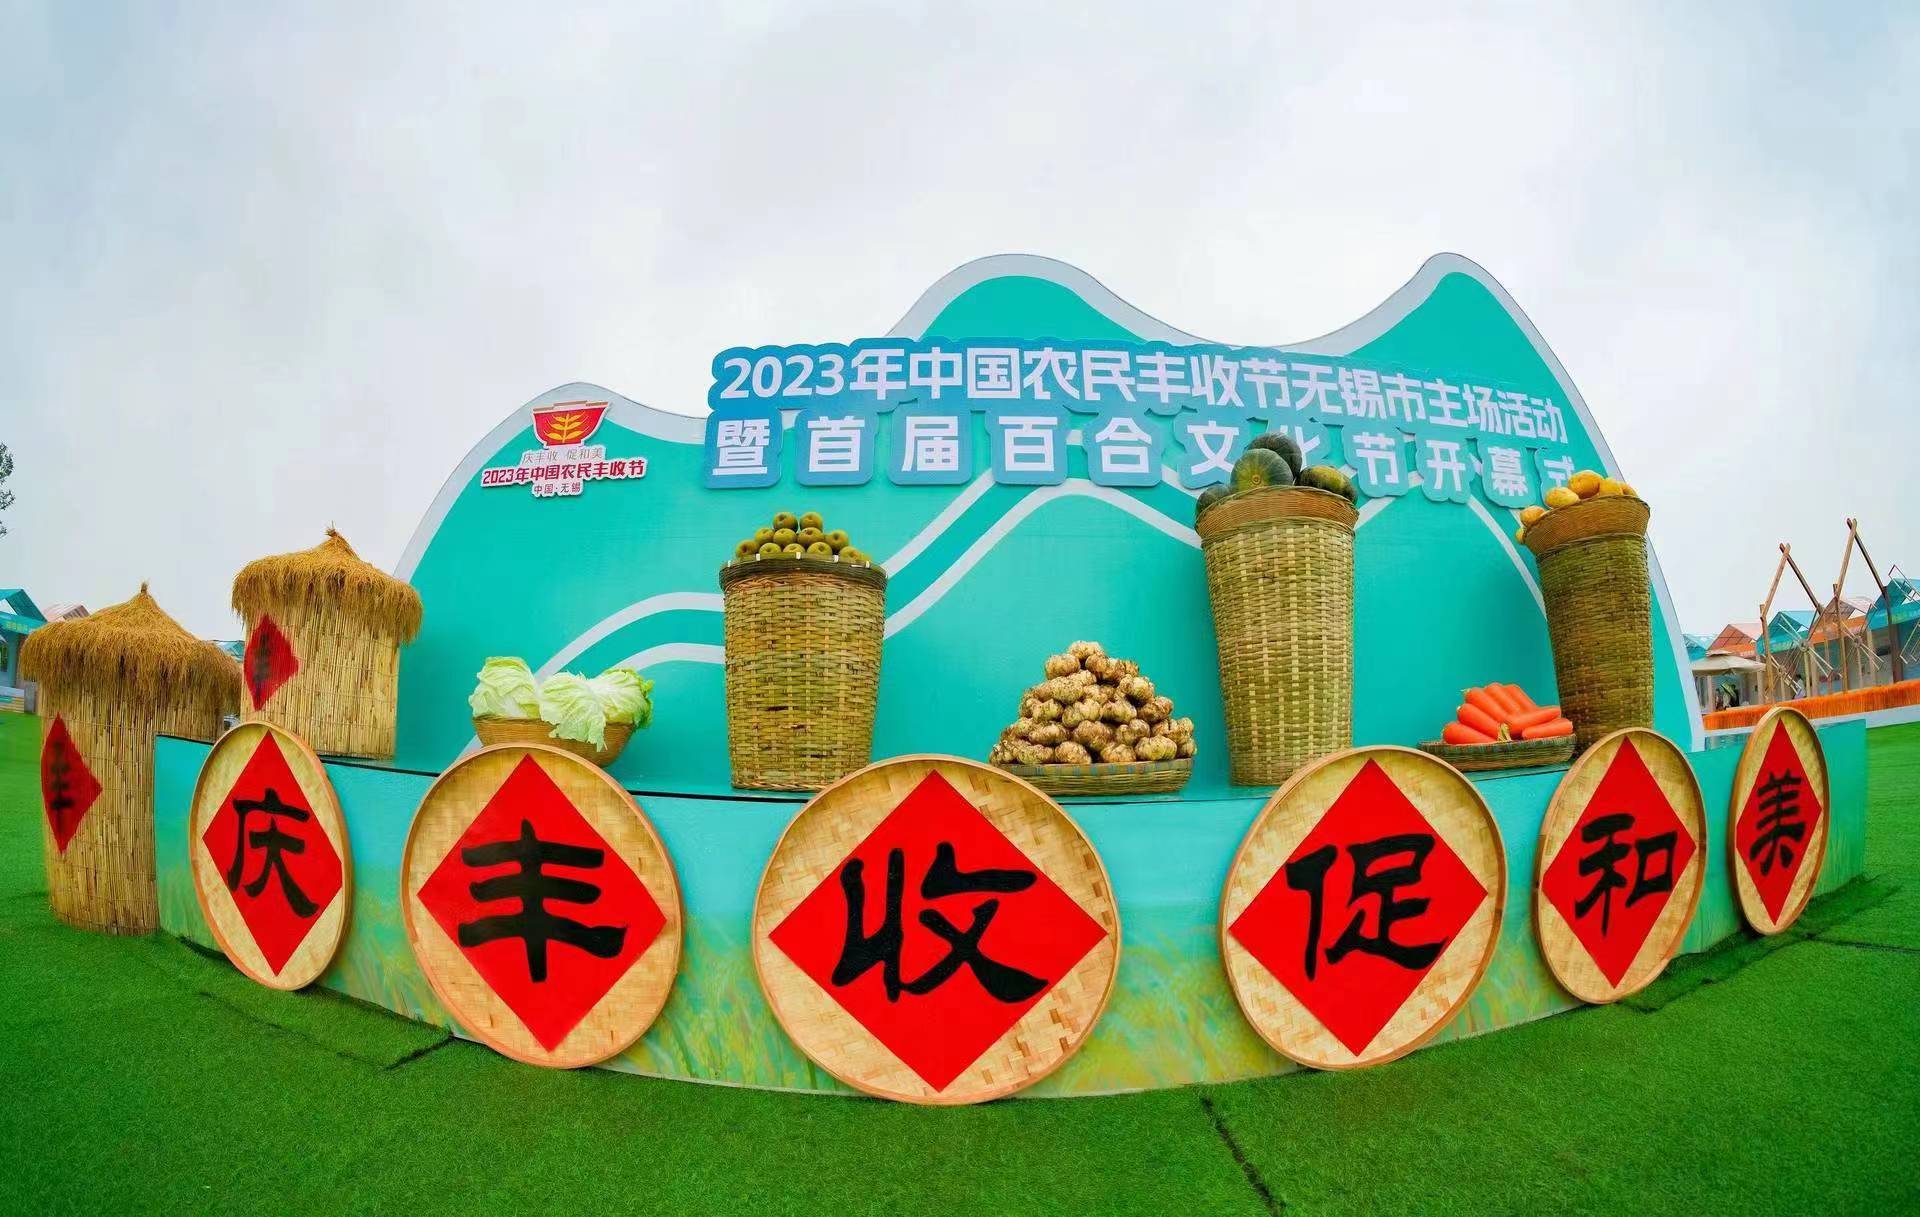 2023年中国农民丰收节无锡市主场活动暨首届百合文化节在宜兴市新庄街道举行.jpg